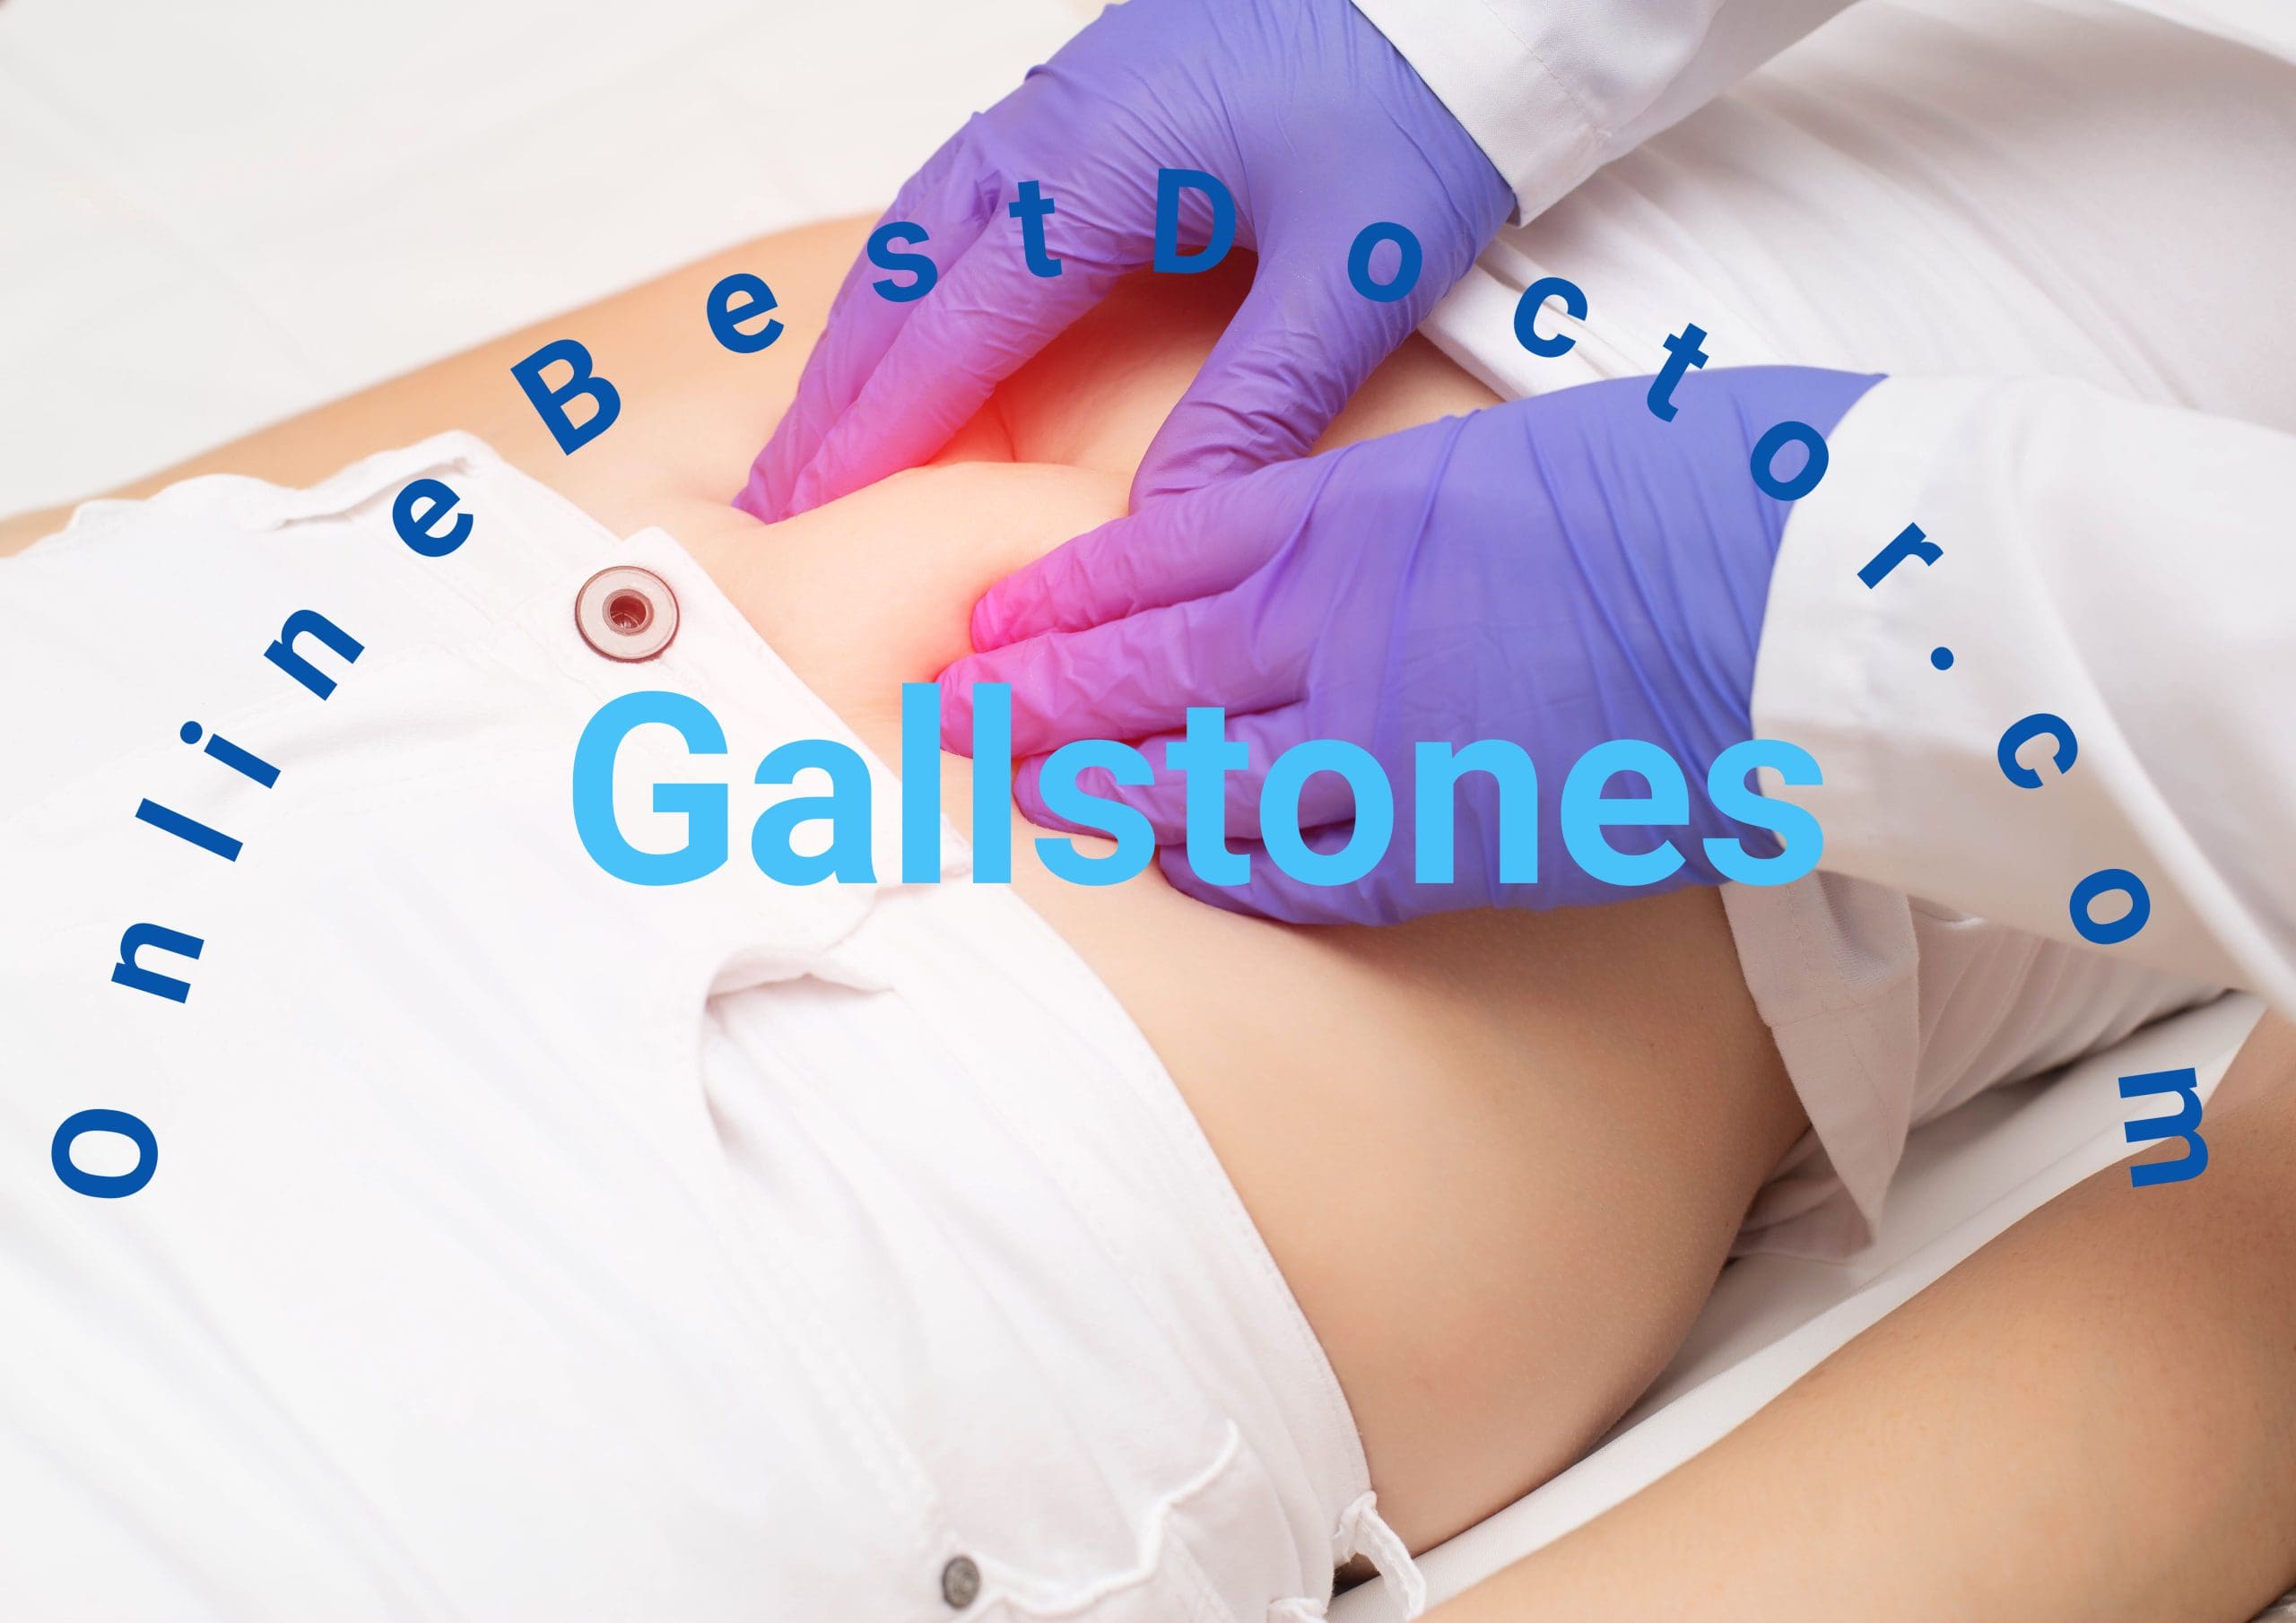 Are gallstones dangerous?